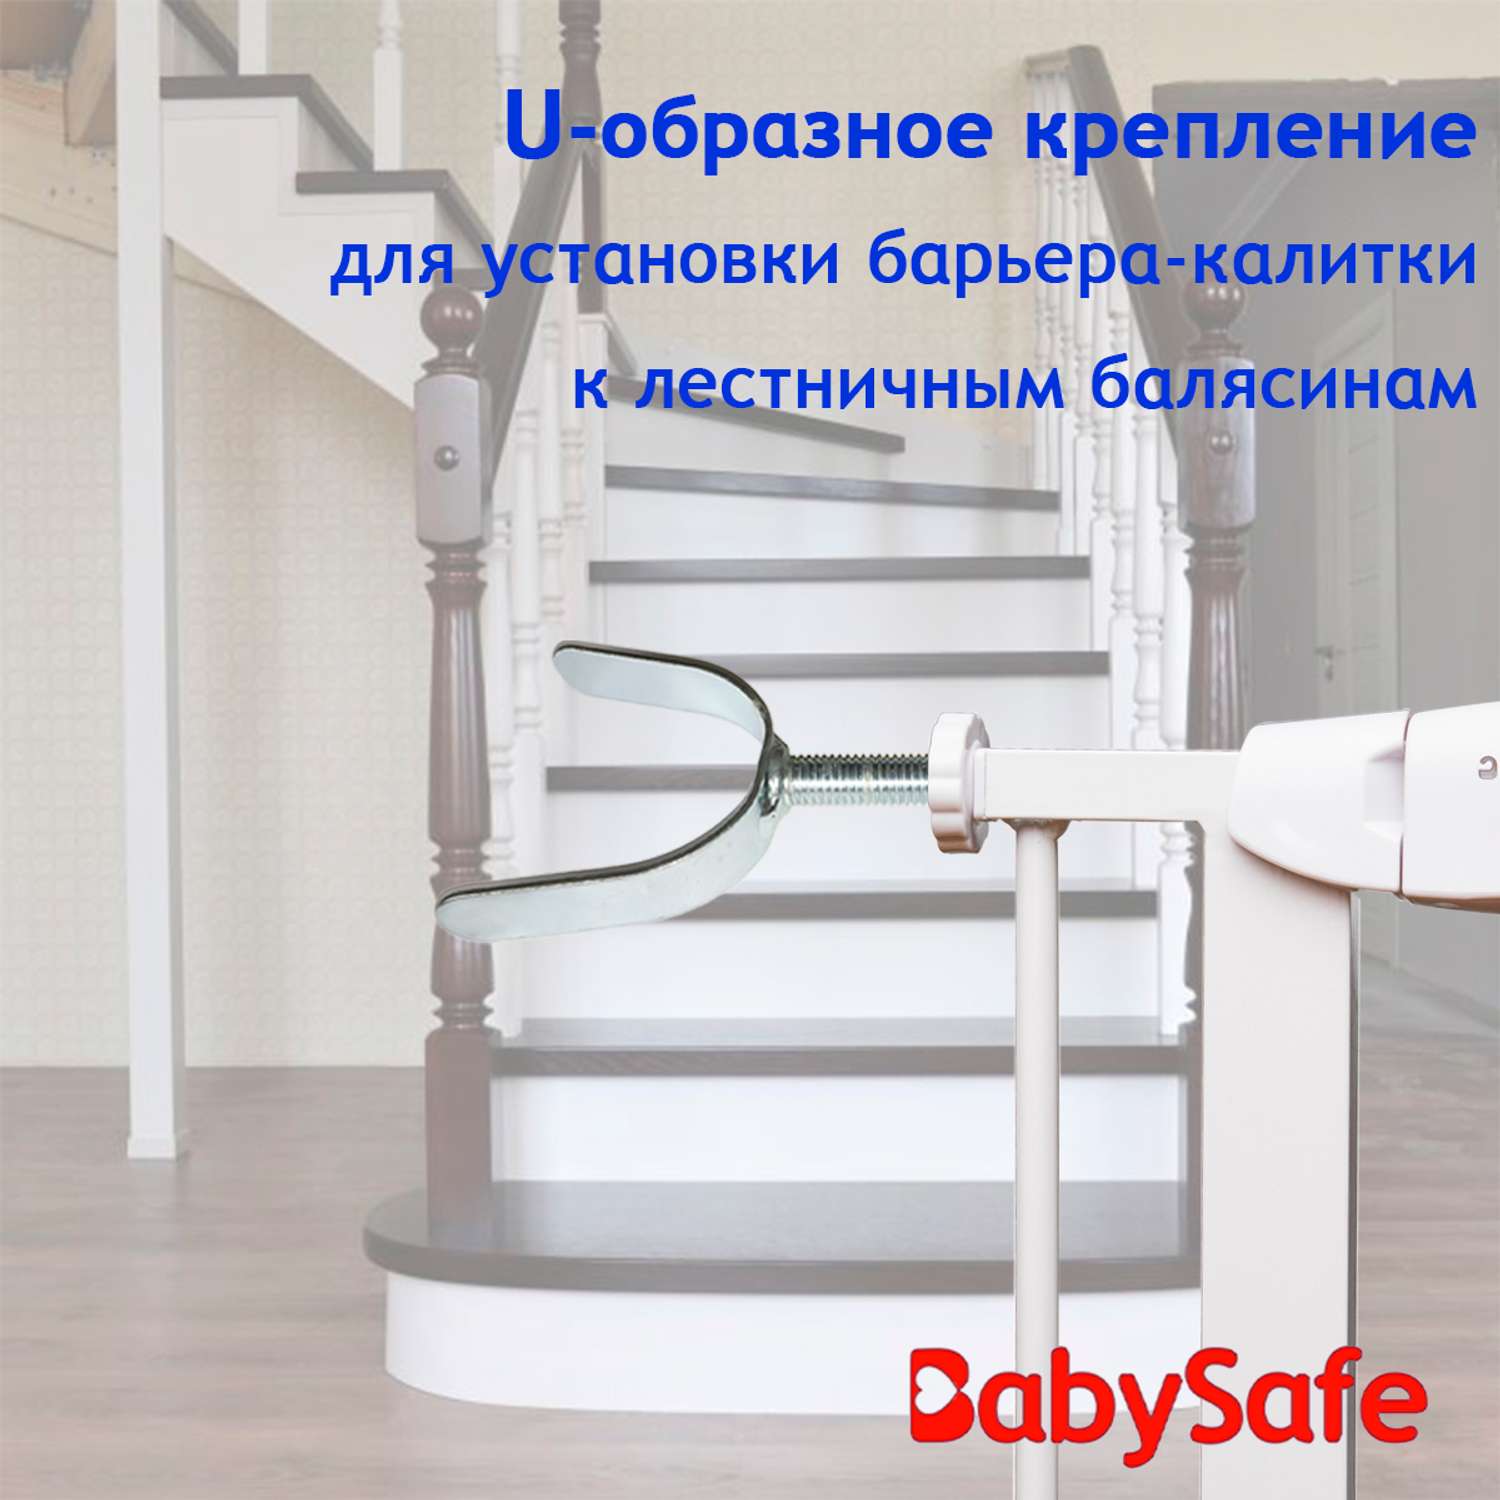 Крепление Baby Safe для барьера-калитки XY-021 - фото 1